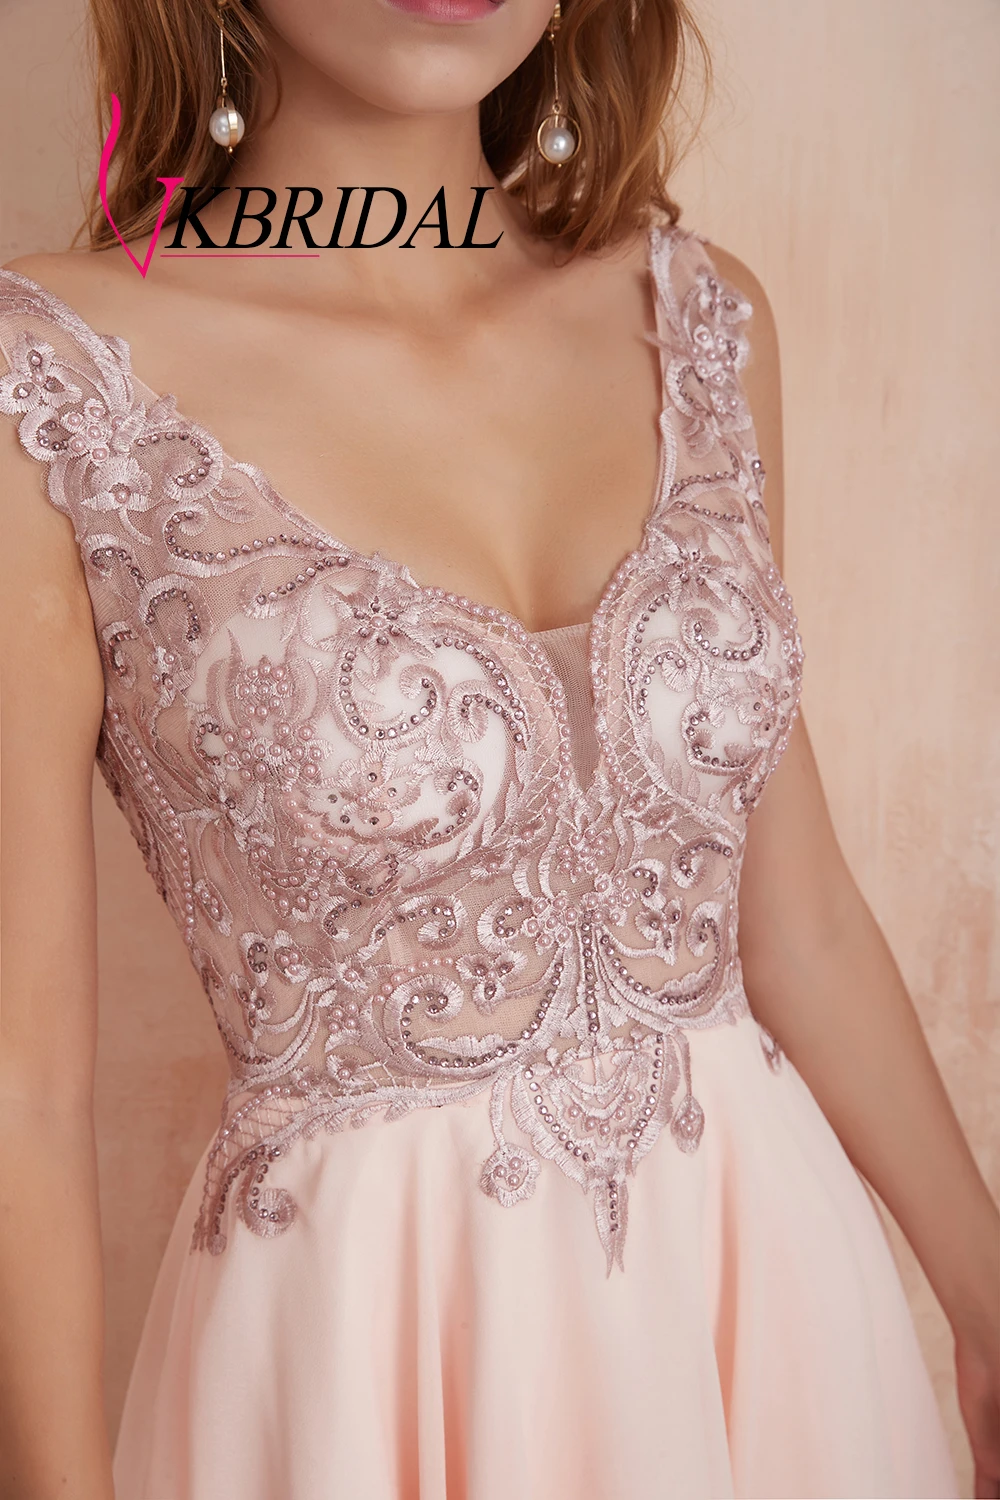 VKBRIDAL, сексуальные платья с открытой спиной для выпускного вечера, короткие,, v-образный вырез, шифон, кружево, бисер, жемчуг, розовые, вечерние платья для выпускного вечера